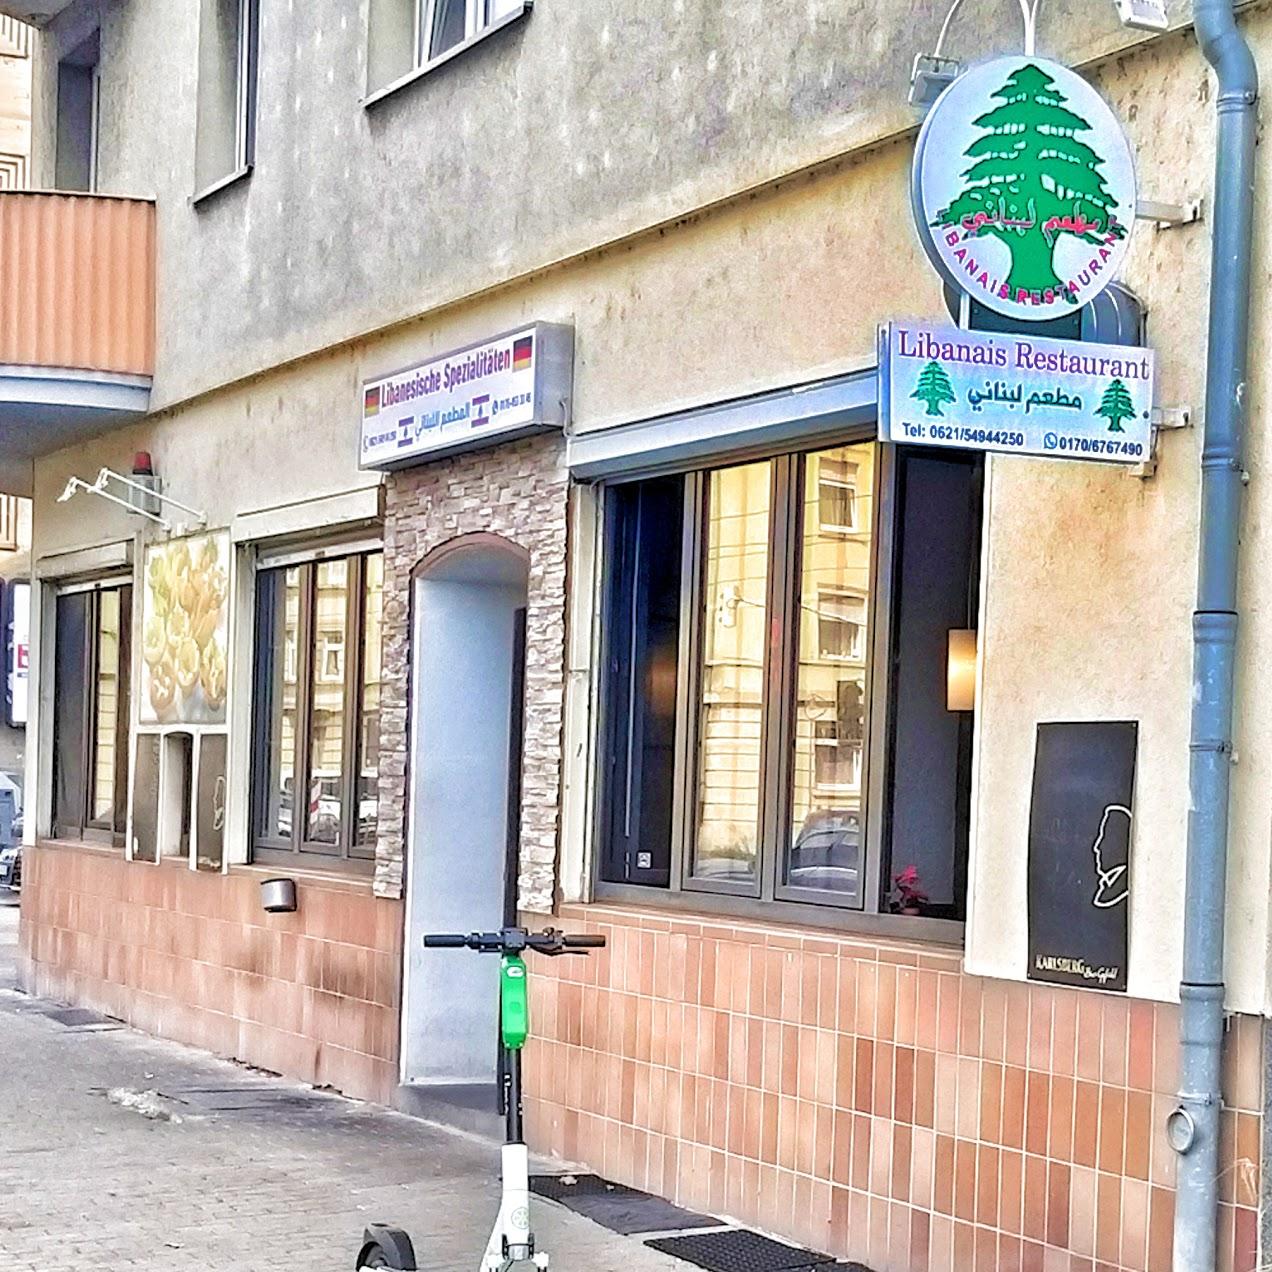 Restaurant "Libanesisches Restaurant Ludwigshafen" in Ludwigshafen am Rhein